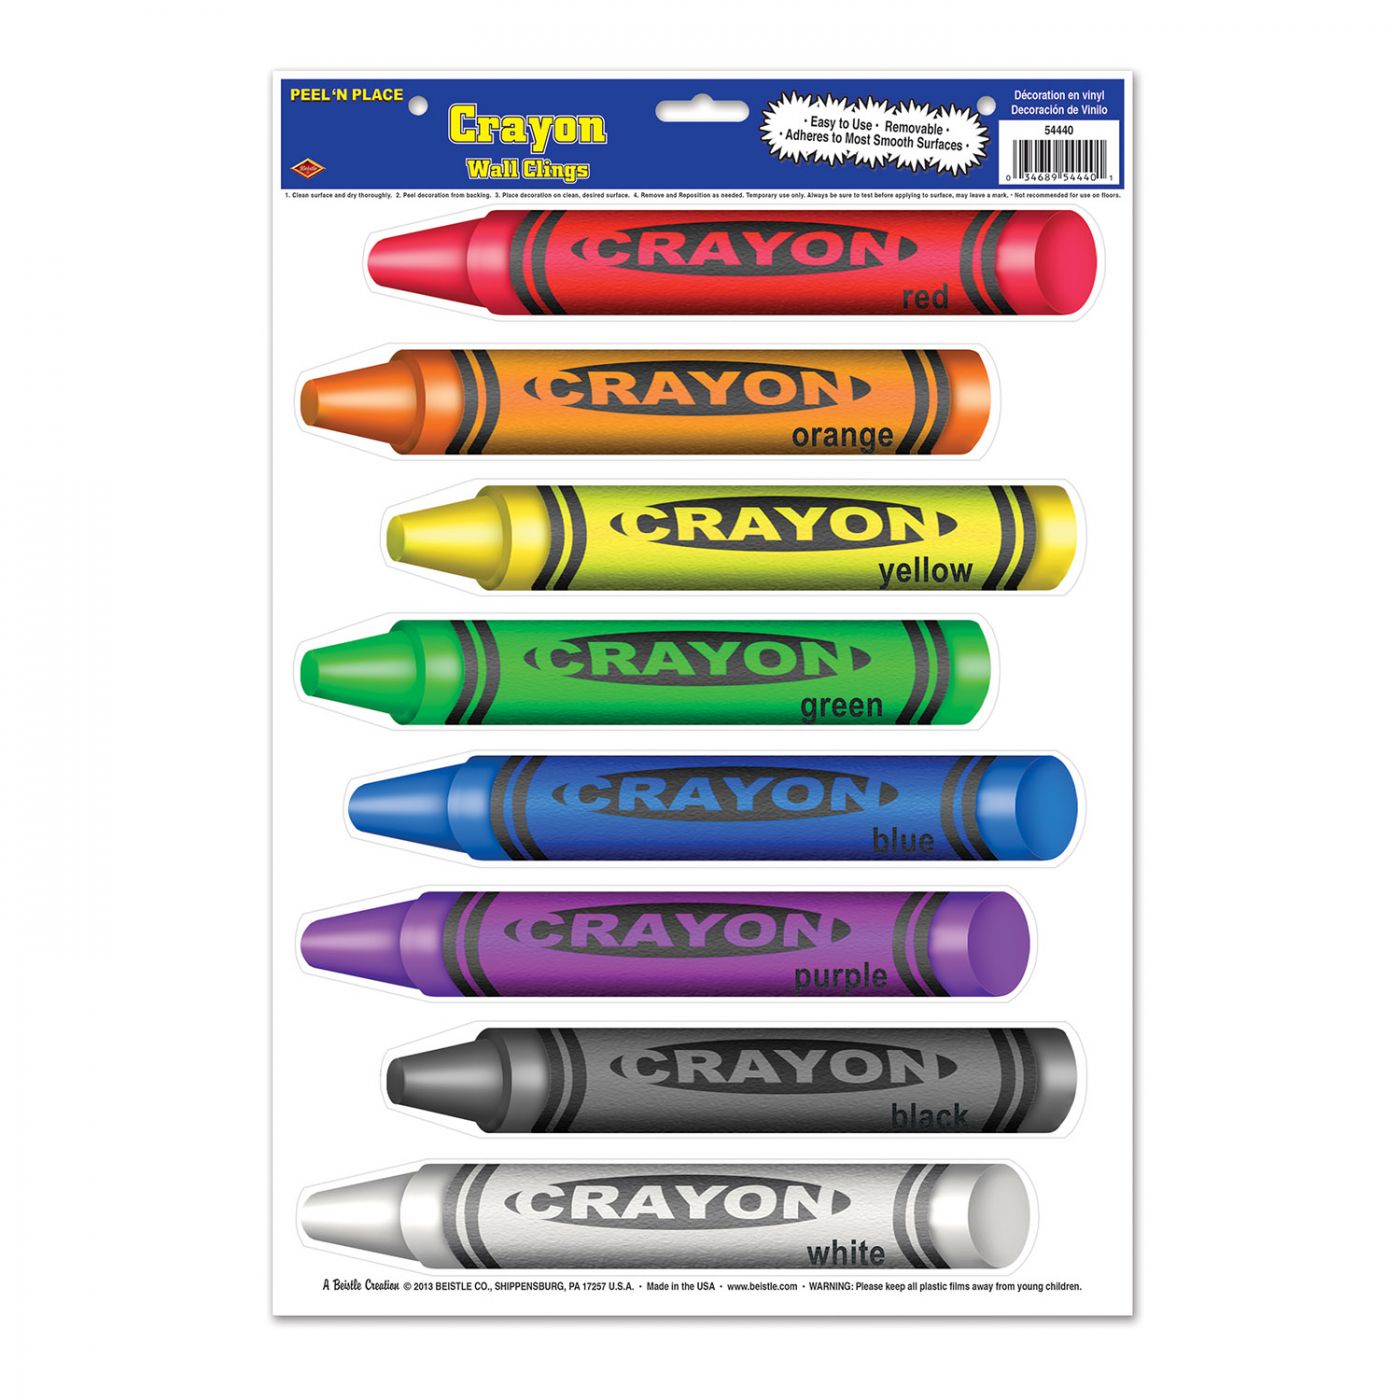 Crayons Peel 'N Place image